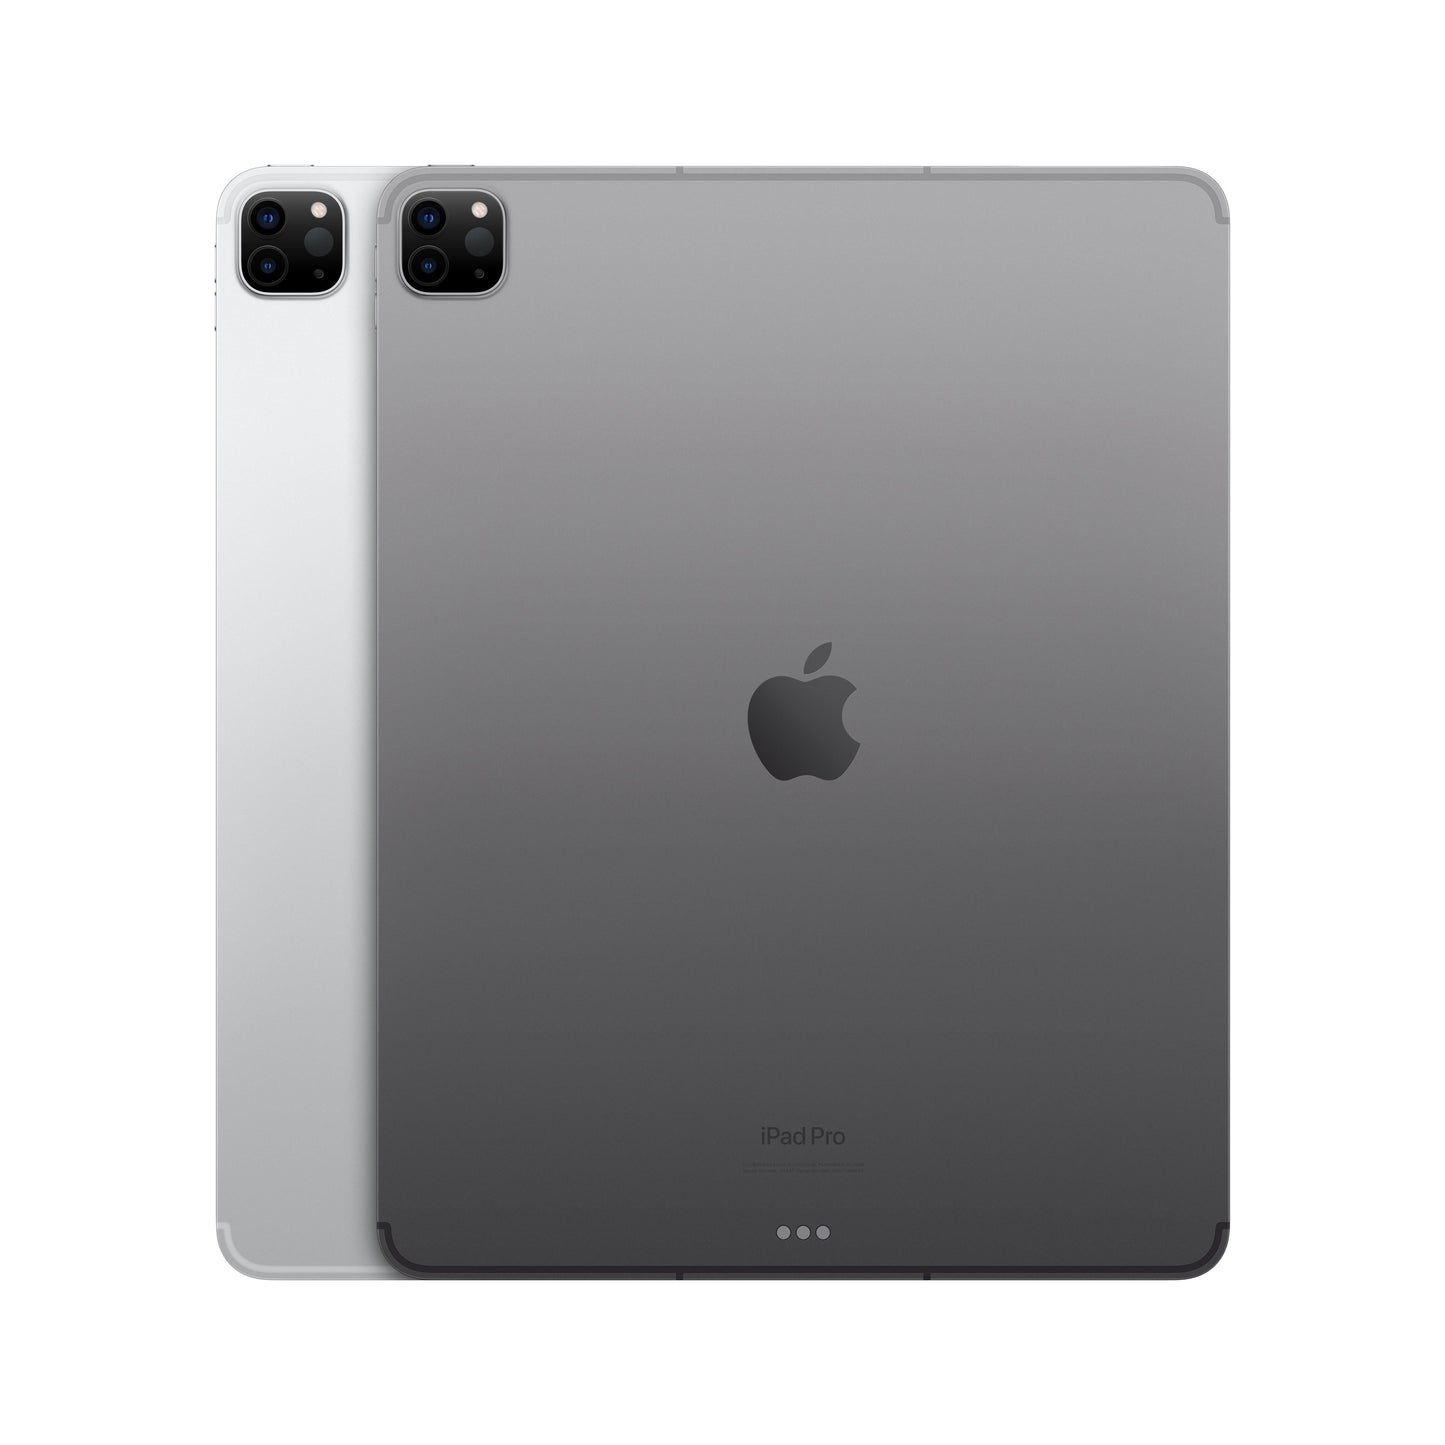 2022 12.9-inch iPad Pro Wi-Fi + Cellular 2TB - Space Grey (6th generation)